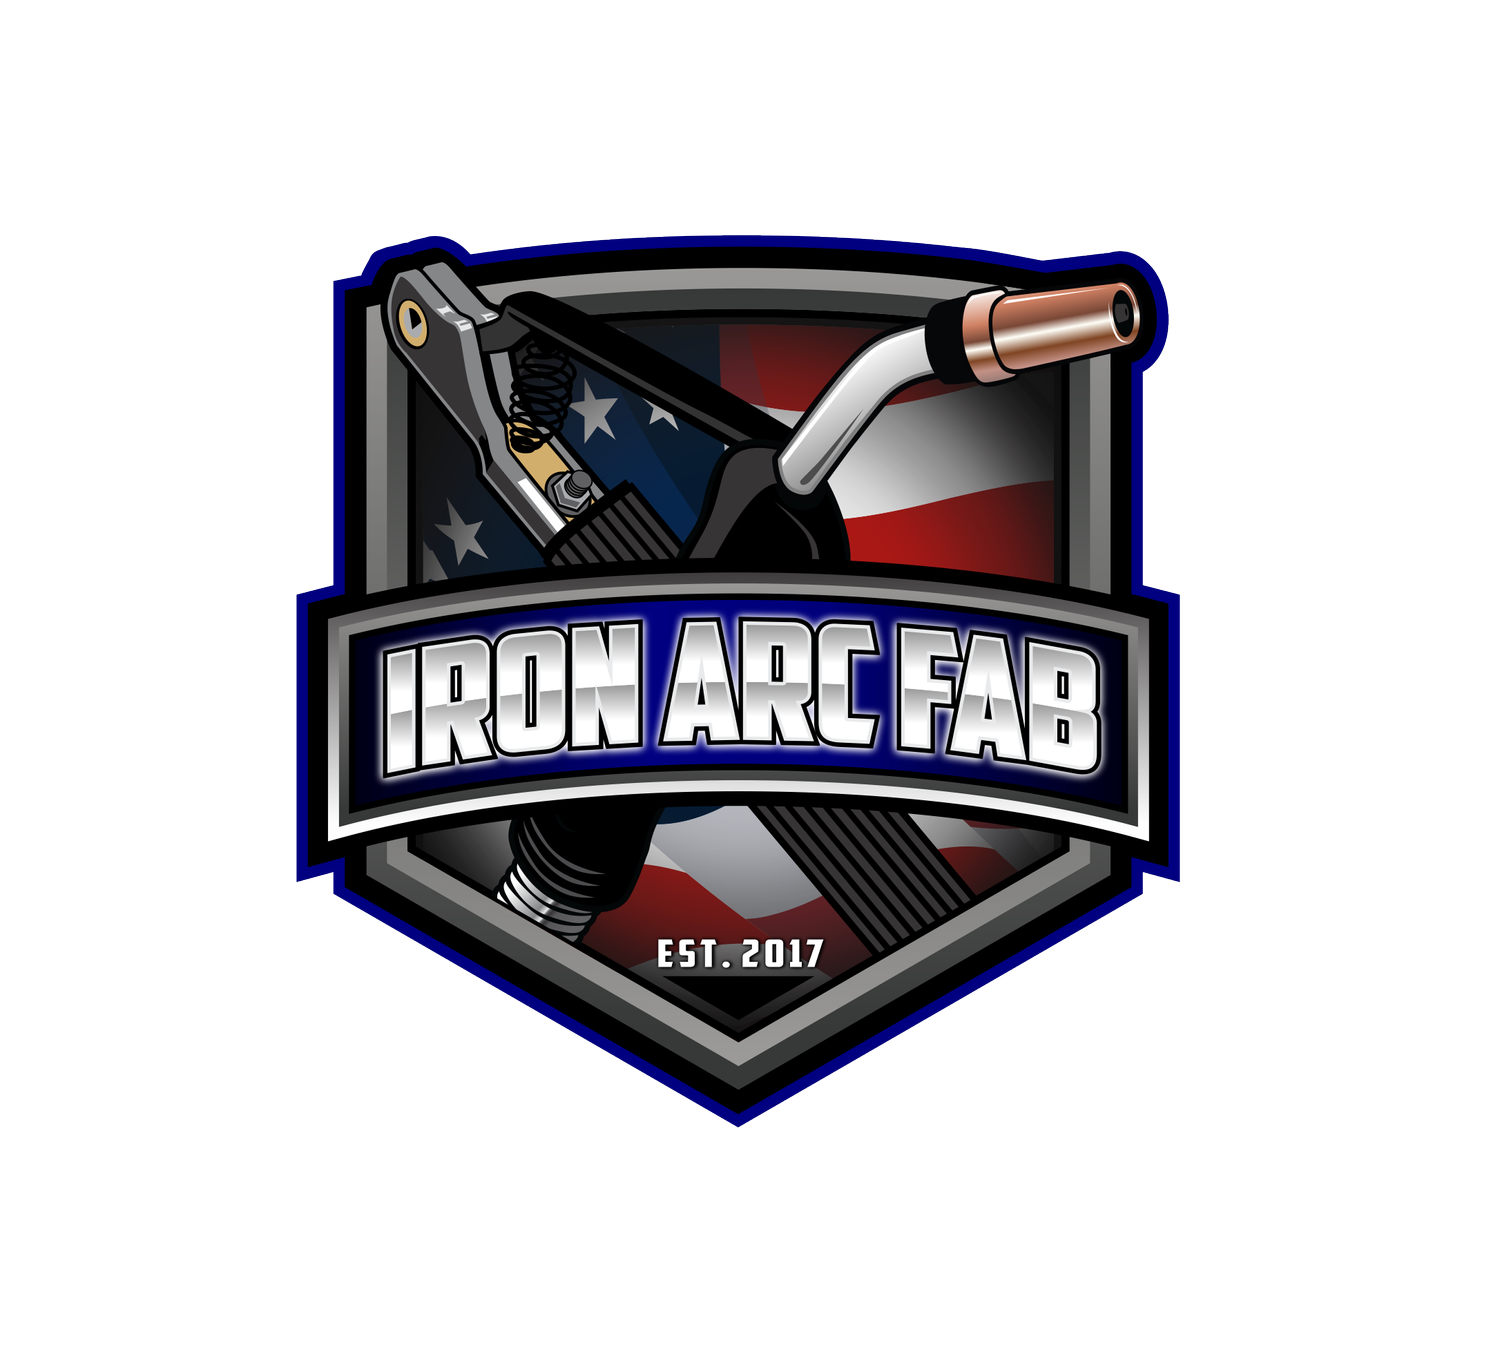 Iron Arc Fab